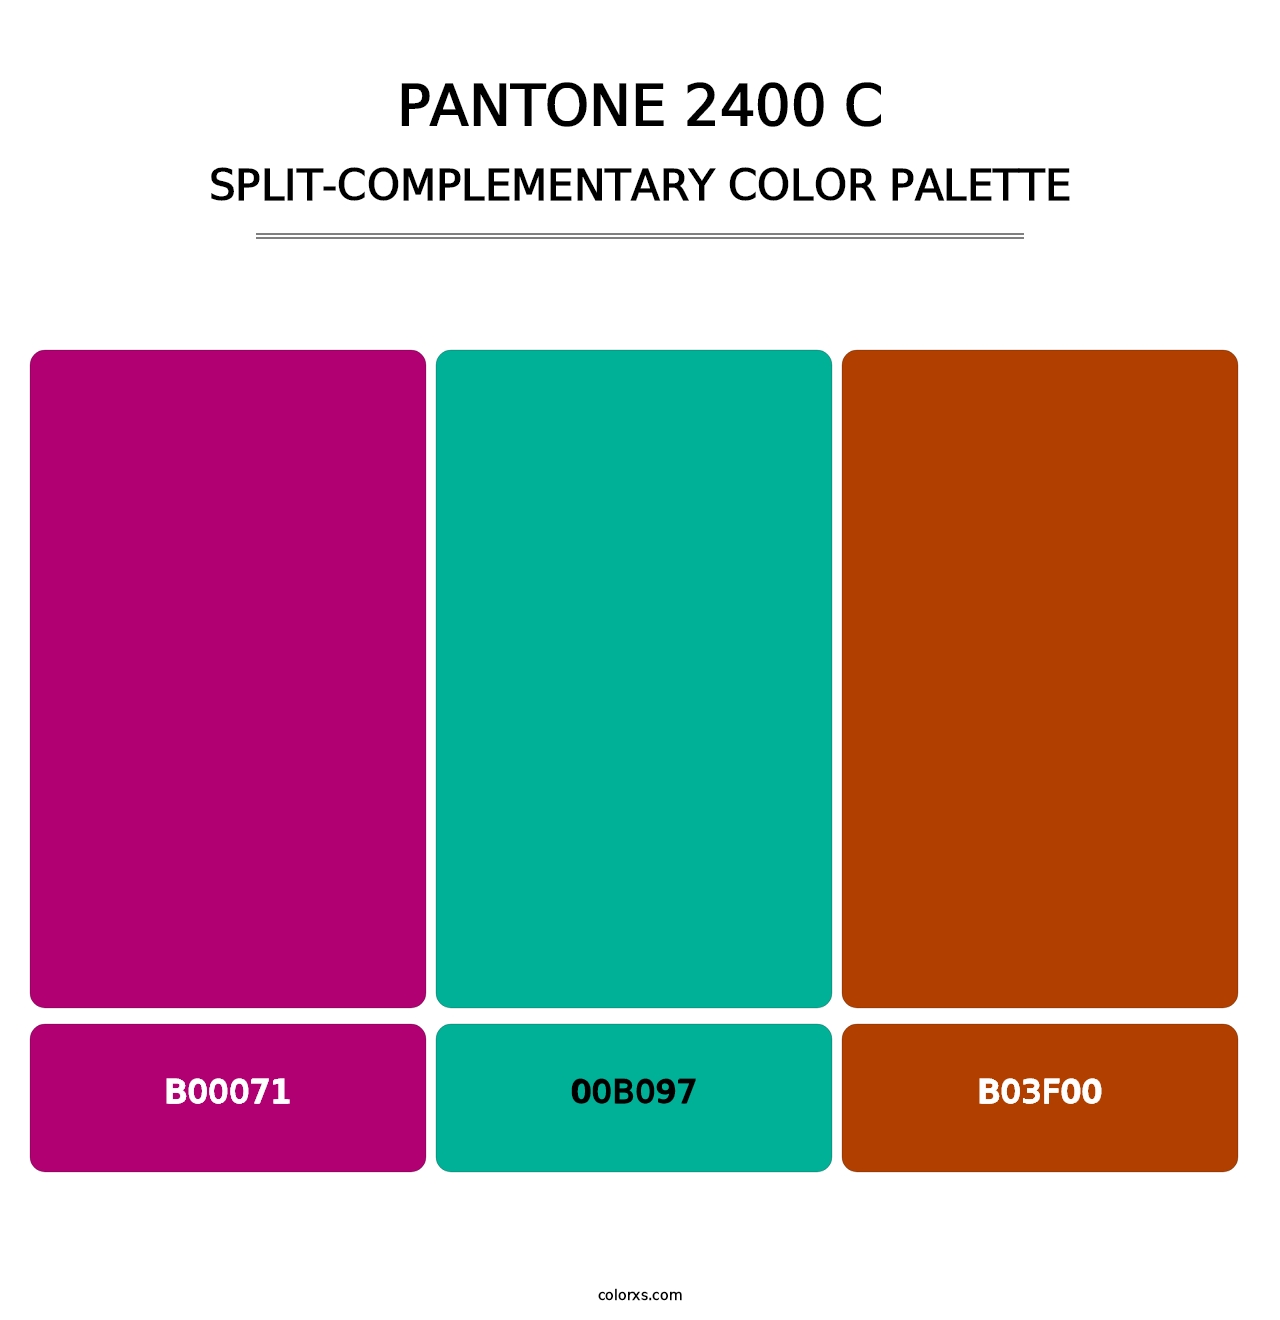 PANTONE 2400 C - Split-Complementary Color Palette